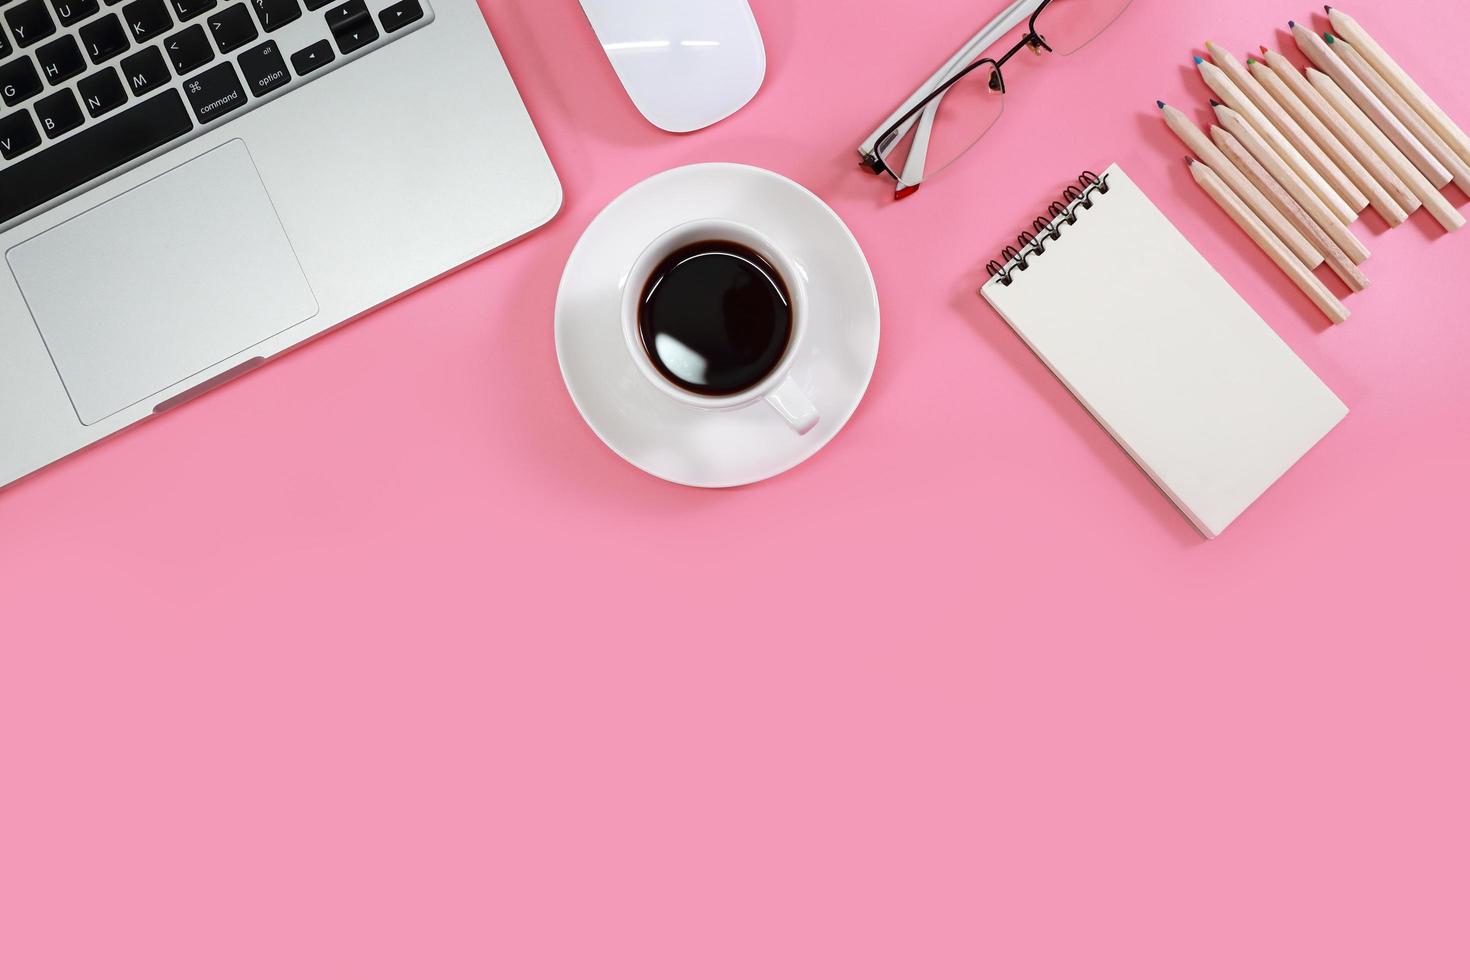 platt liggande arbetsbord med bärbar dator, kontorsmaterial, kaffekopp, mobiltelefon, surfplatta och kaffekopp på rosa bakgrund foto